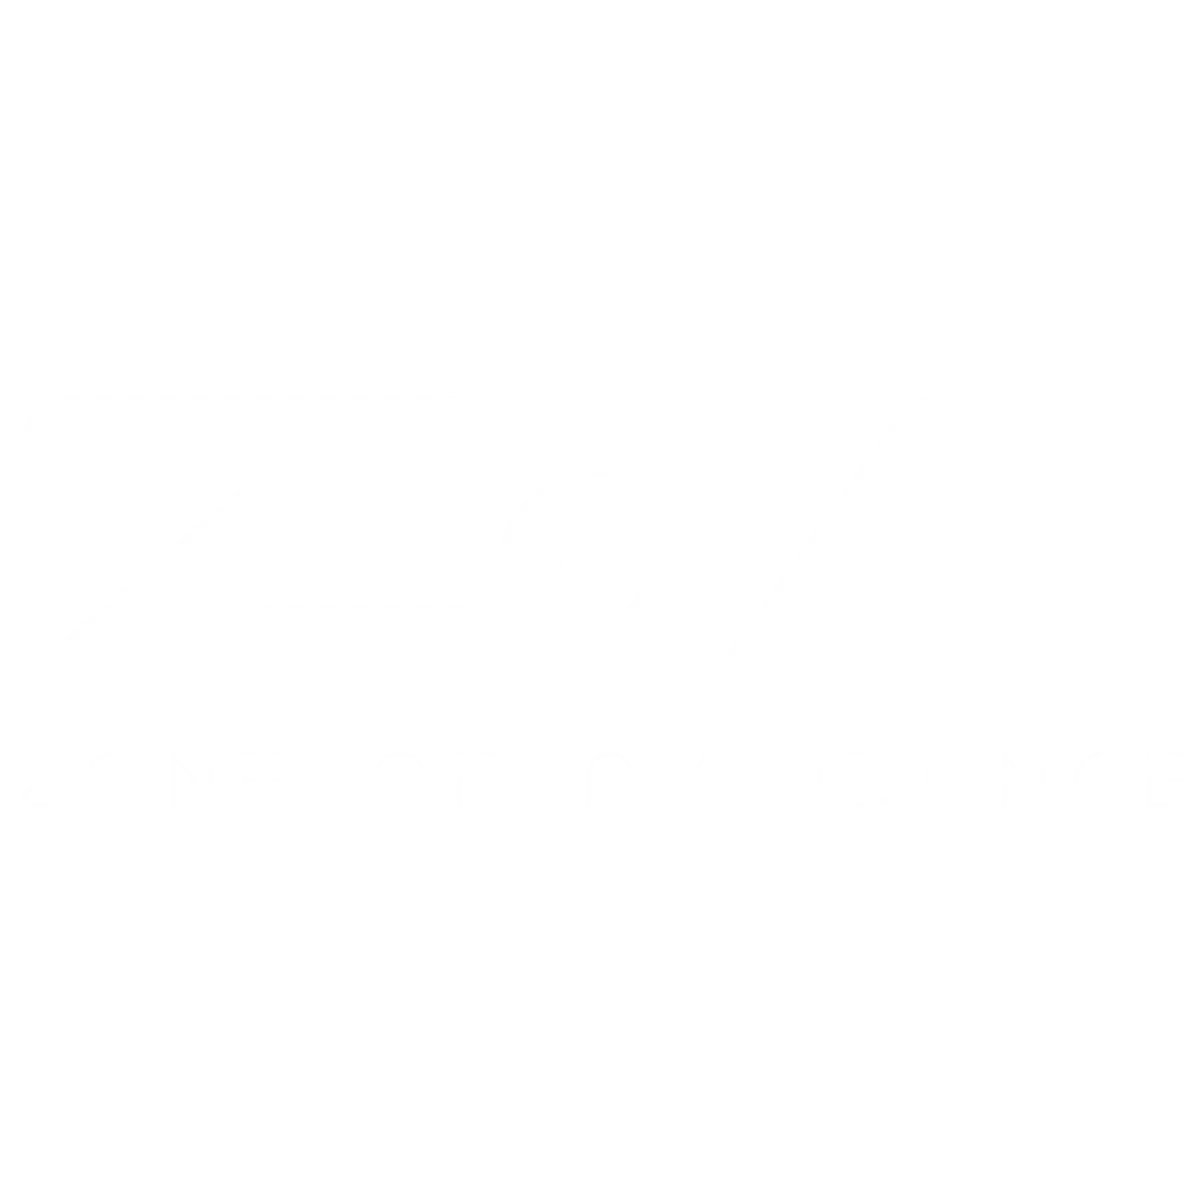 ZOA Public Round